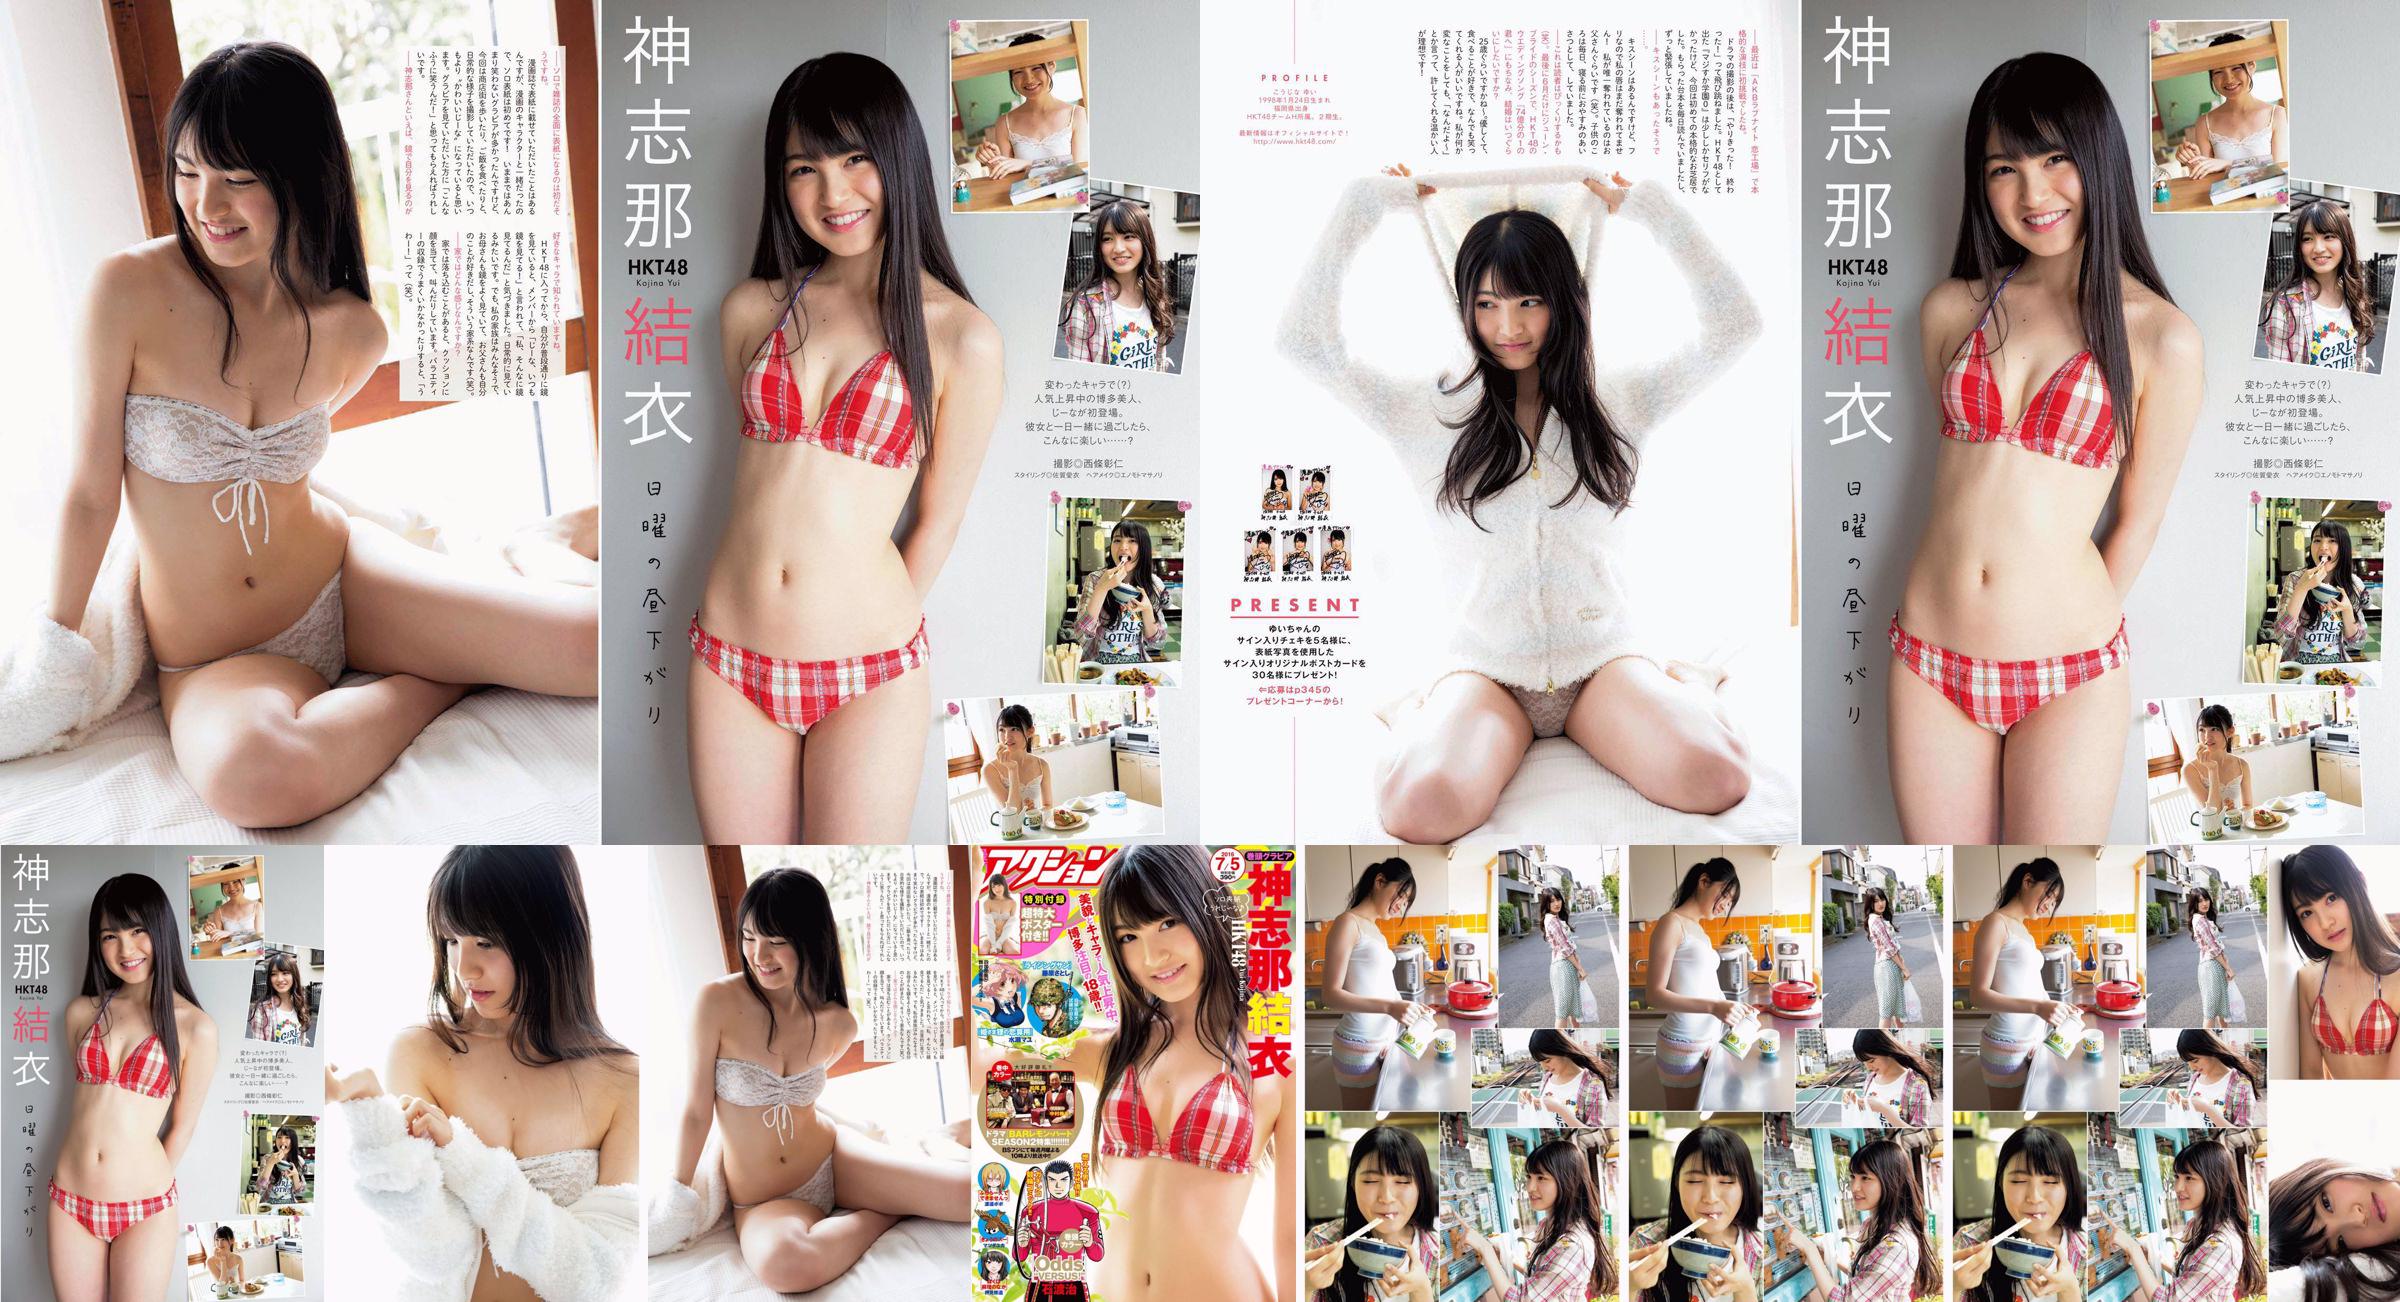 [Manga Action] Shinshina Yui 2016 No.13 Photo Magazine No.305427 Page 4